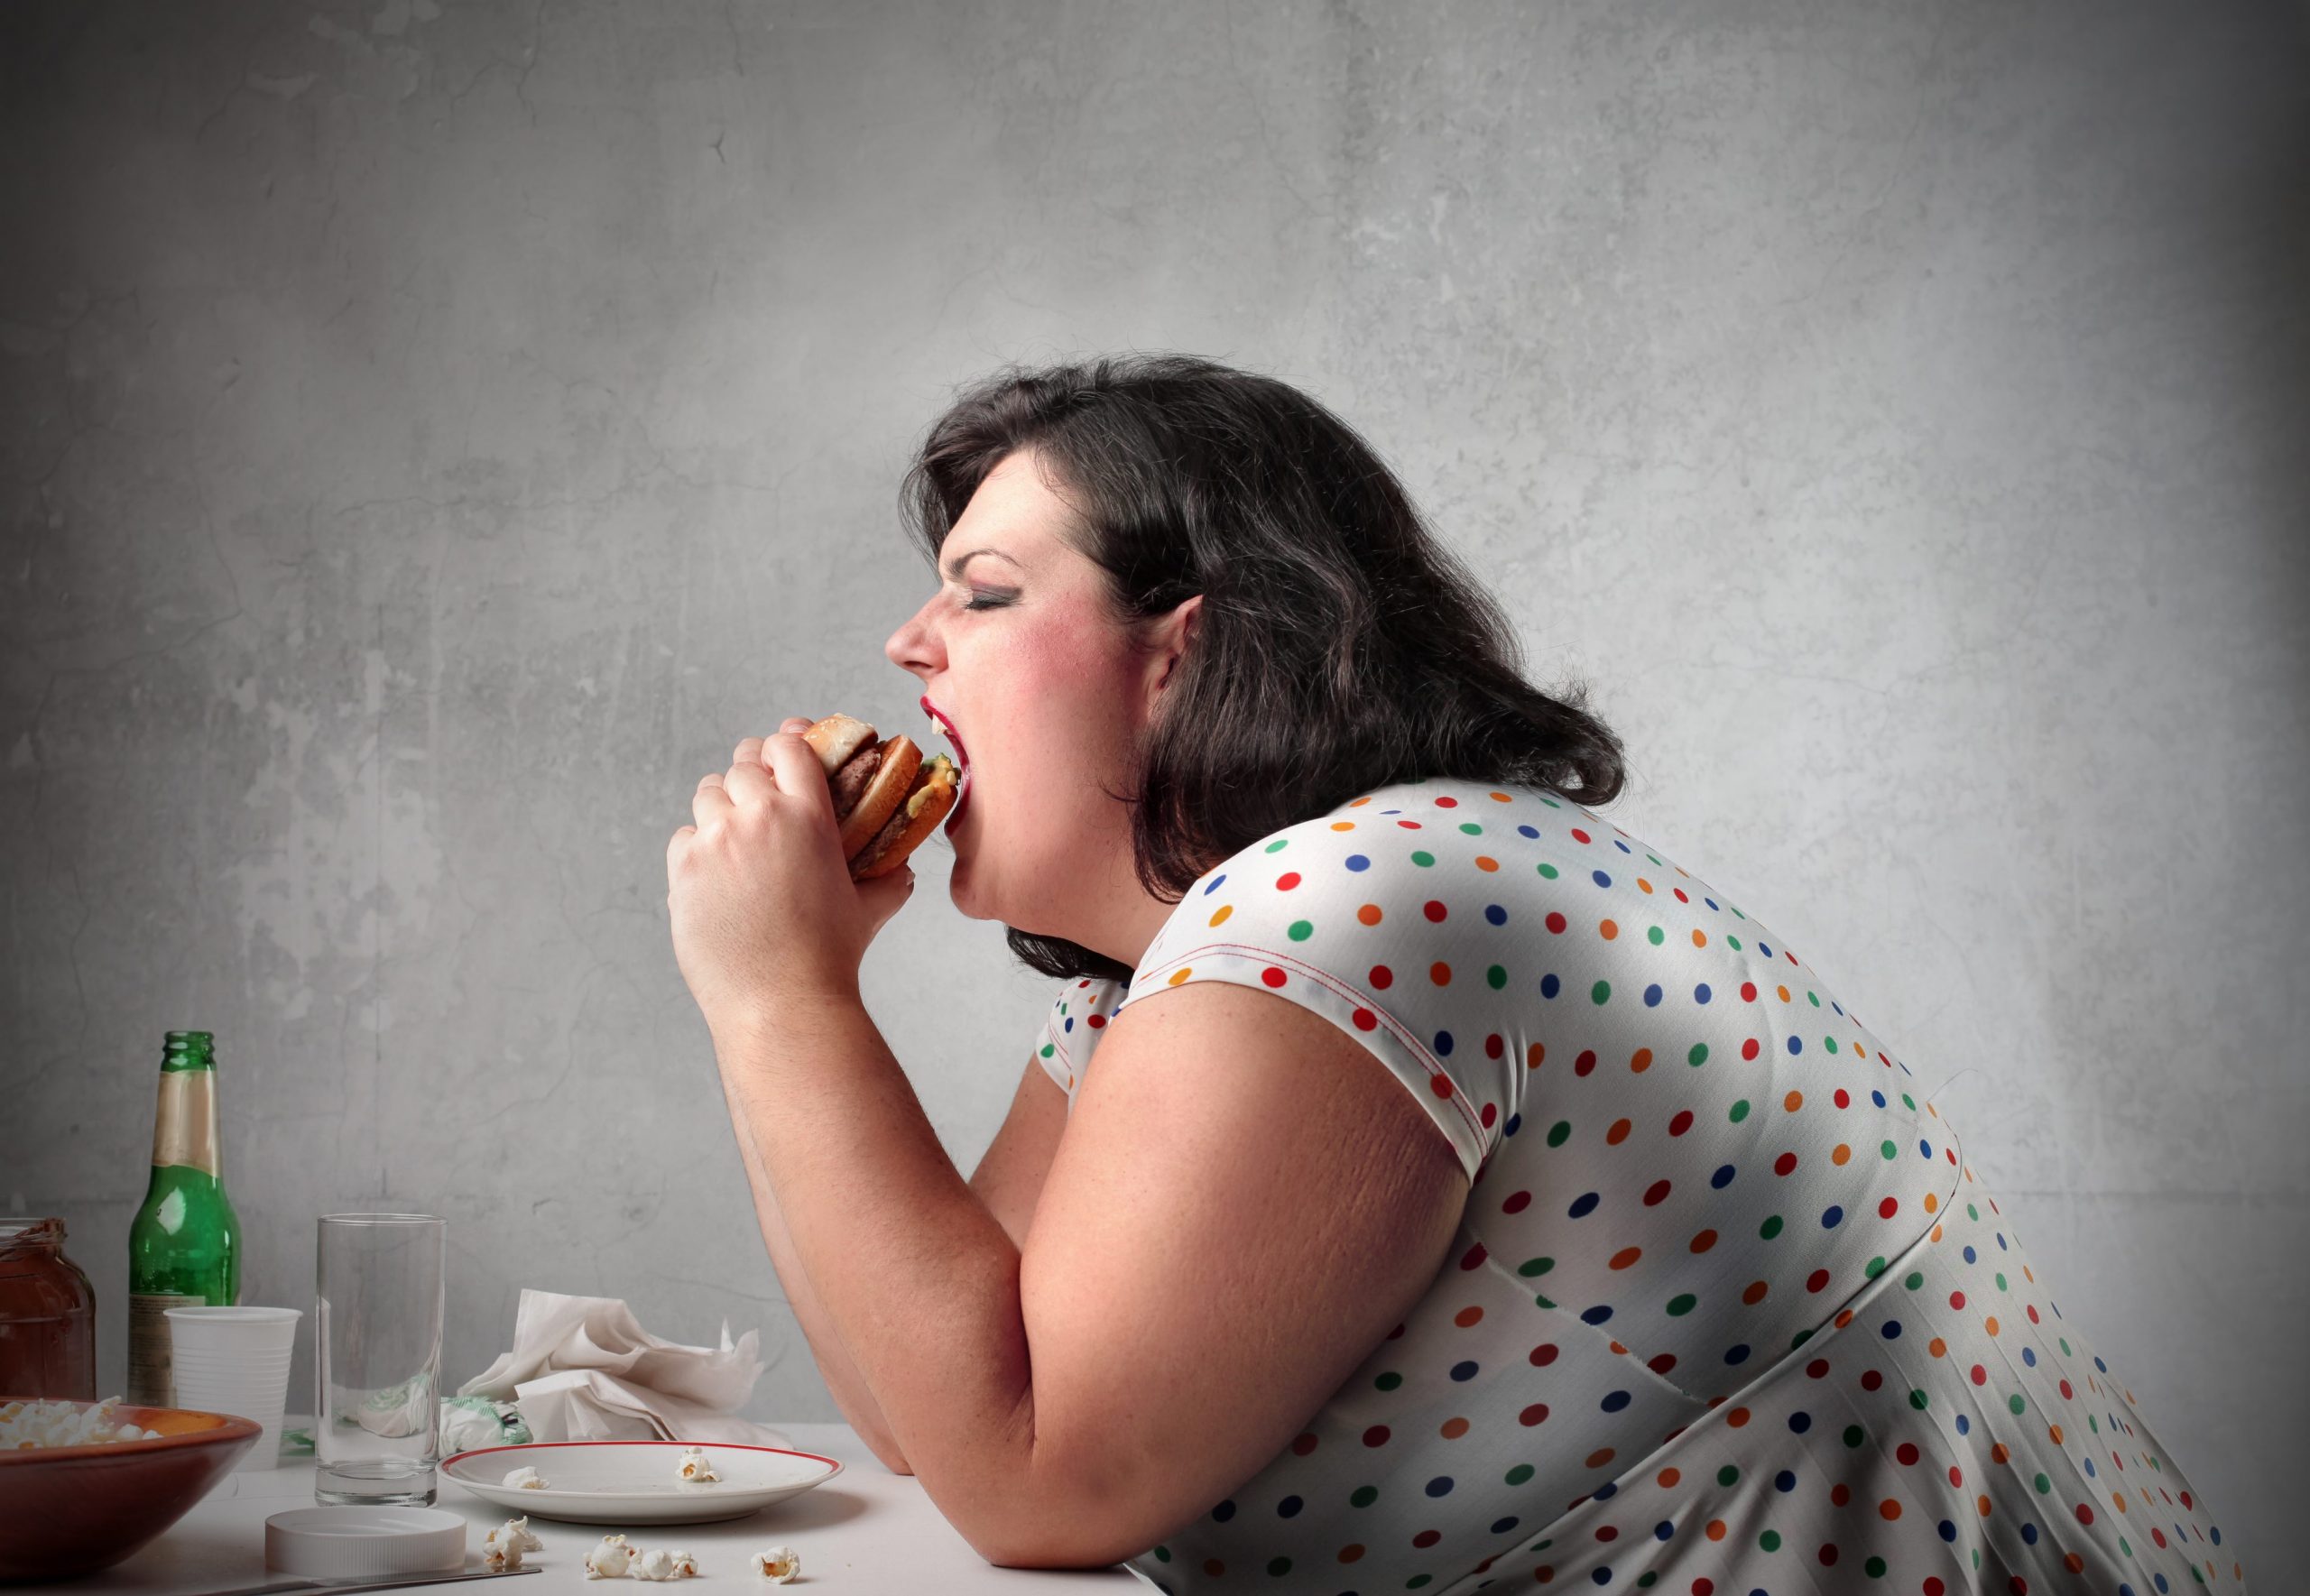 Aumentano in regione le persone sovrappeso: oltre 300mila gli obesi